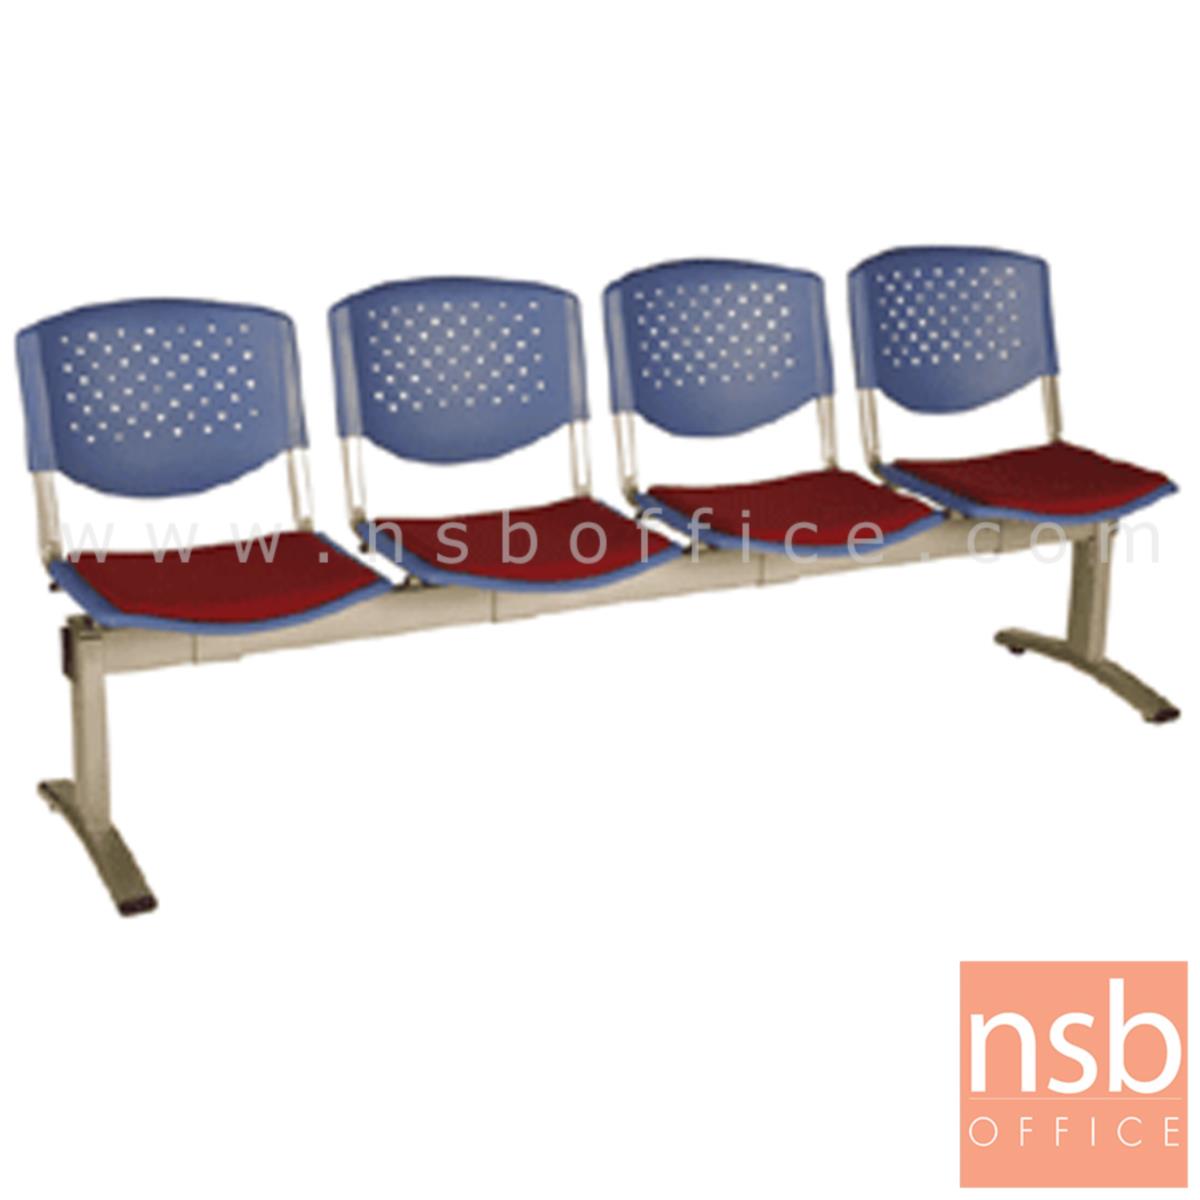 B06A053:เก้าอี้นั่งคอยเฟรมโพลี่ รุ่น B736 2 ,3 ,4 ที่นั่ง ขนาด 99W ,149W ,202W cm. ขาเหล็ก